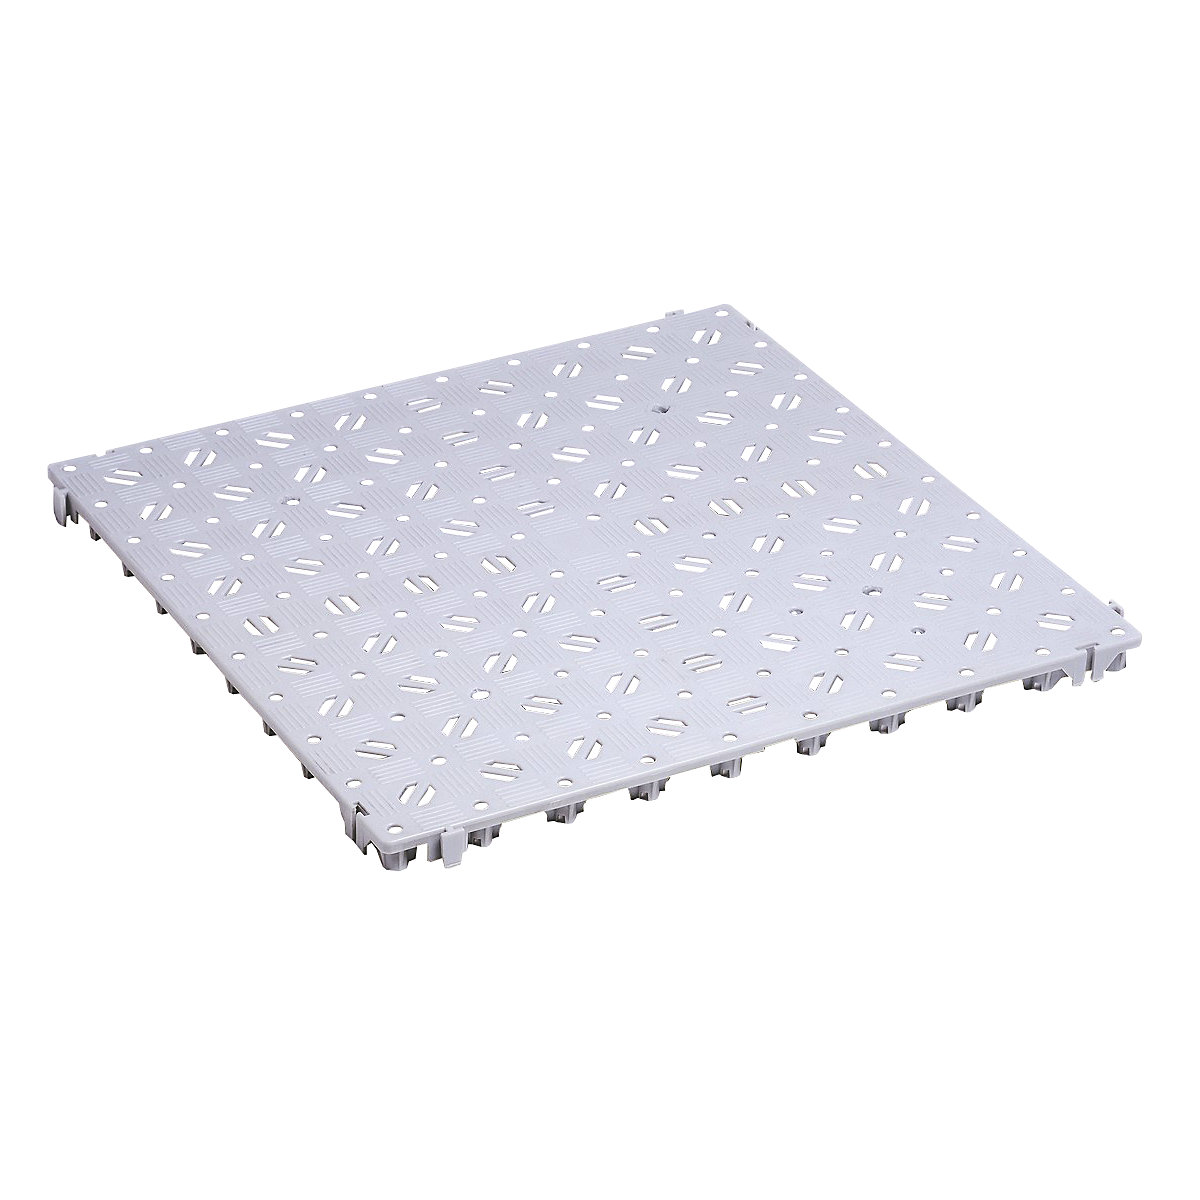 Plastic floor tile, polyethylene, 500 x 500 mm, stable, pack of 20, light grey